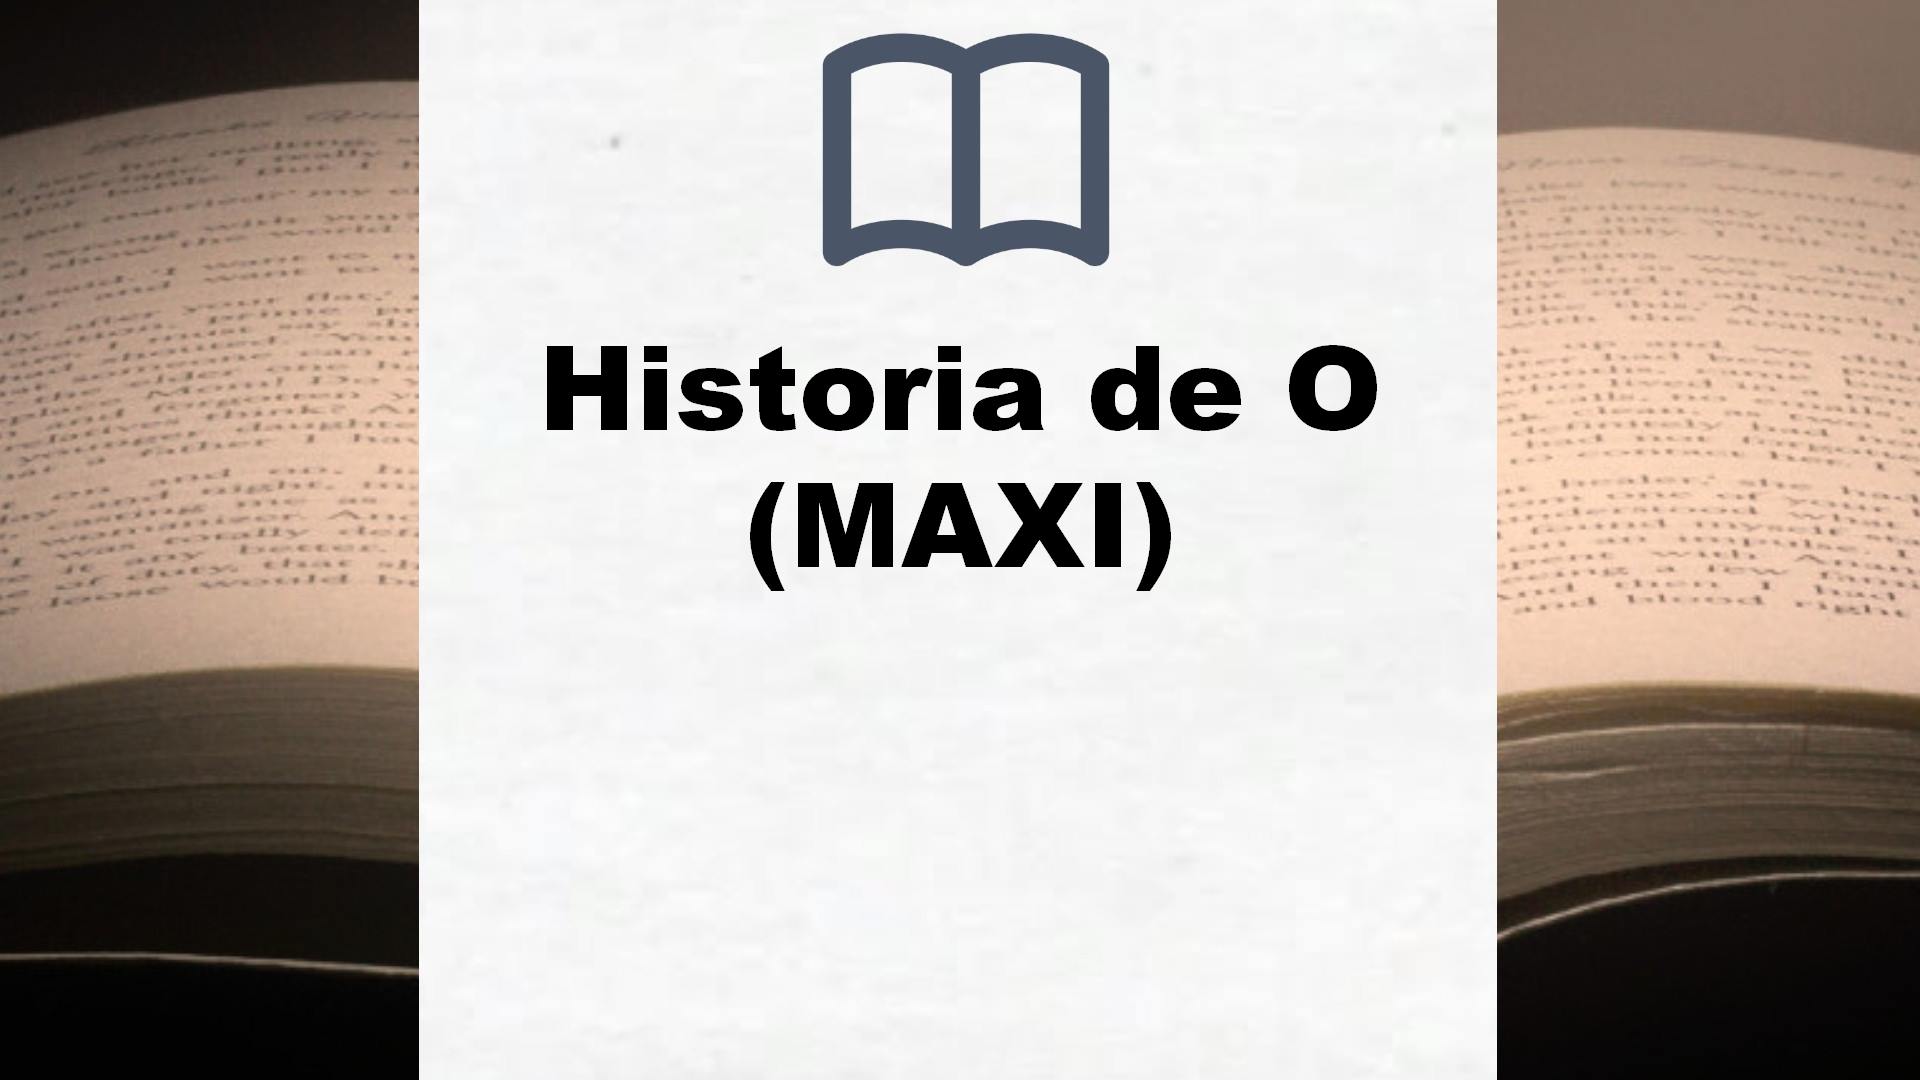 Historia de O (MAXI) – Reseña del libro